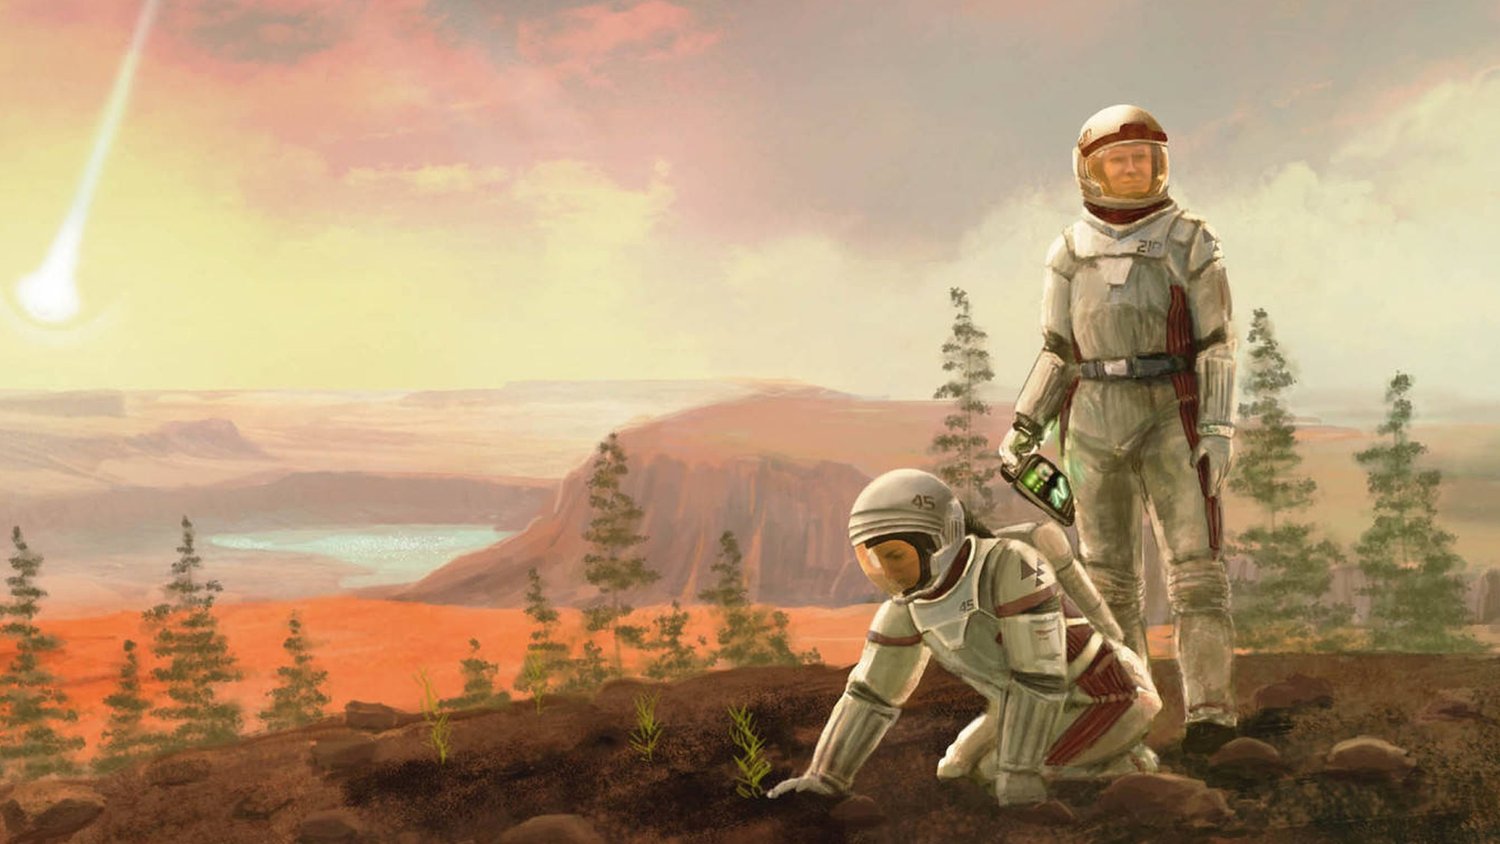 Le jeu de société TERRAFORMING MARS est en cours d’adaptation en long métrage